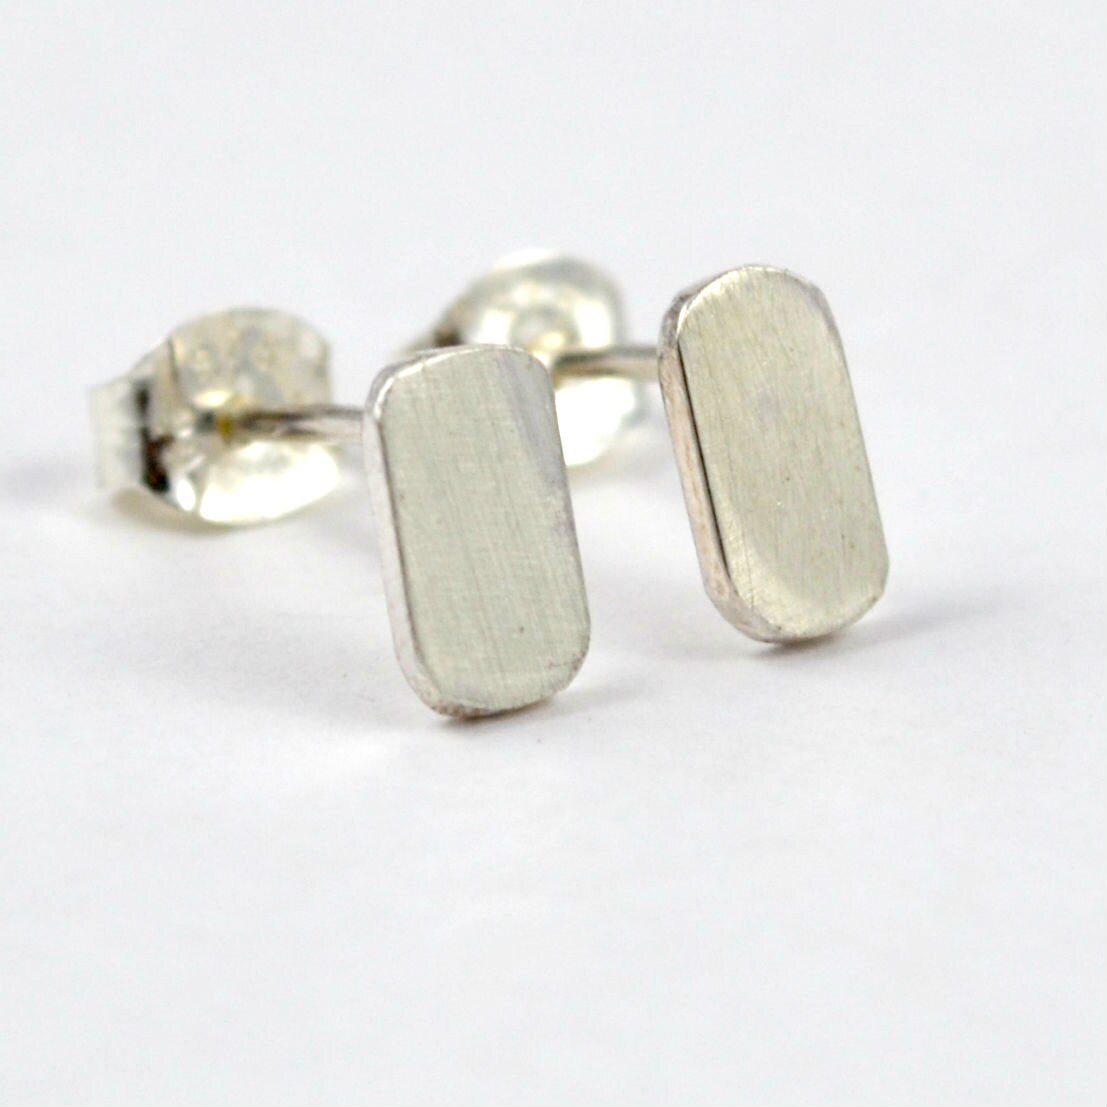 Flat Stud Earrings Sterling Silver Earring Posts Minimalist | Etsy